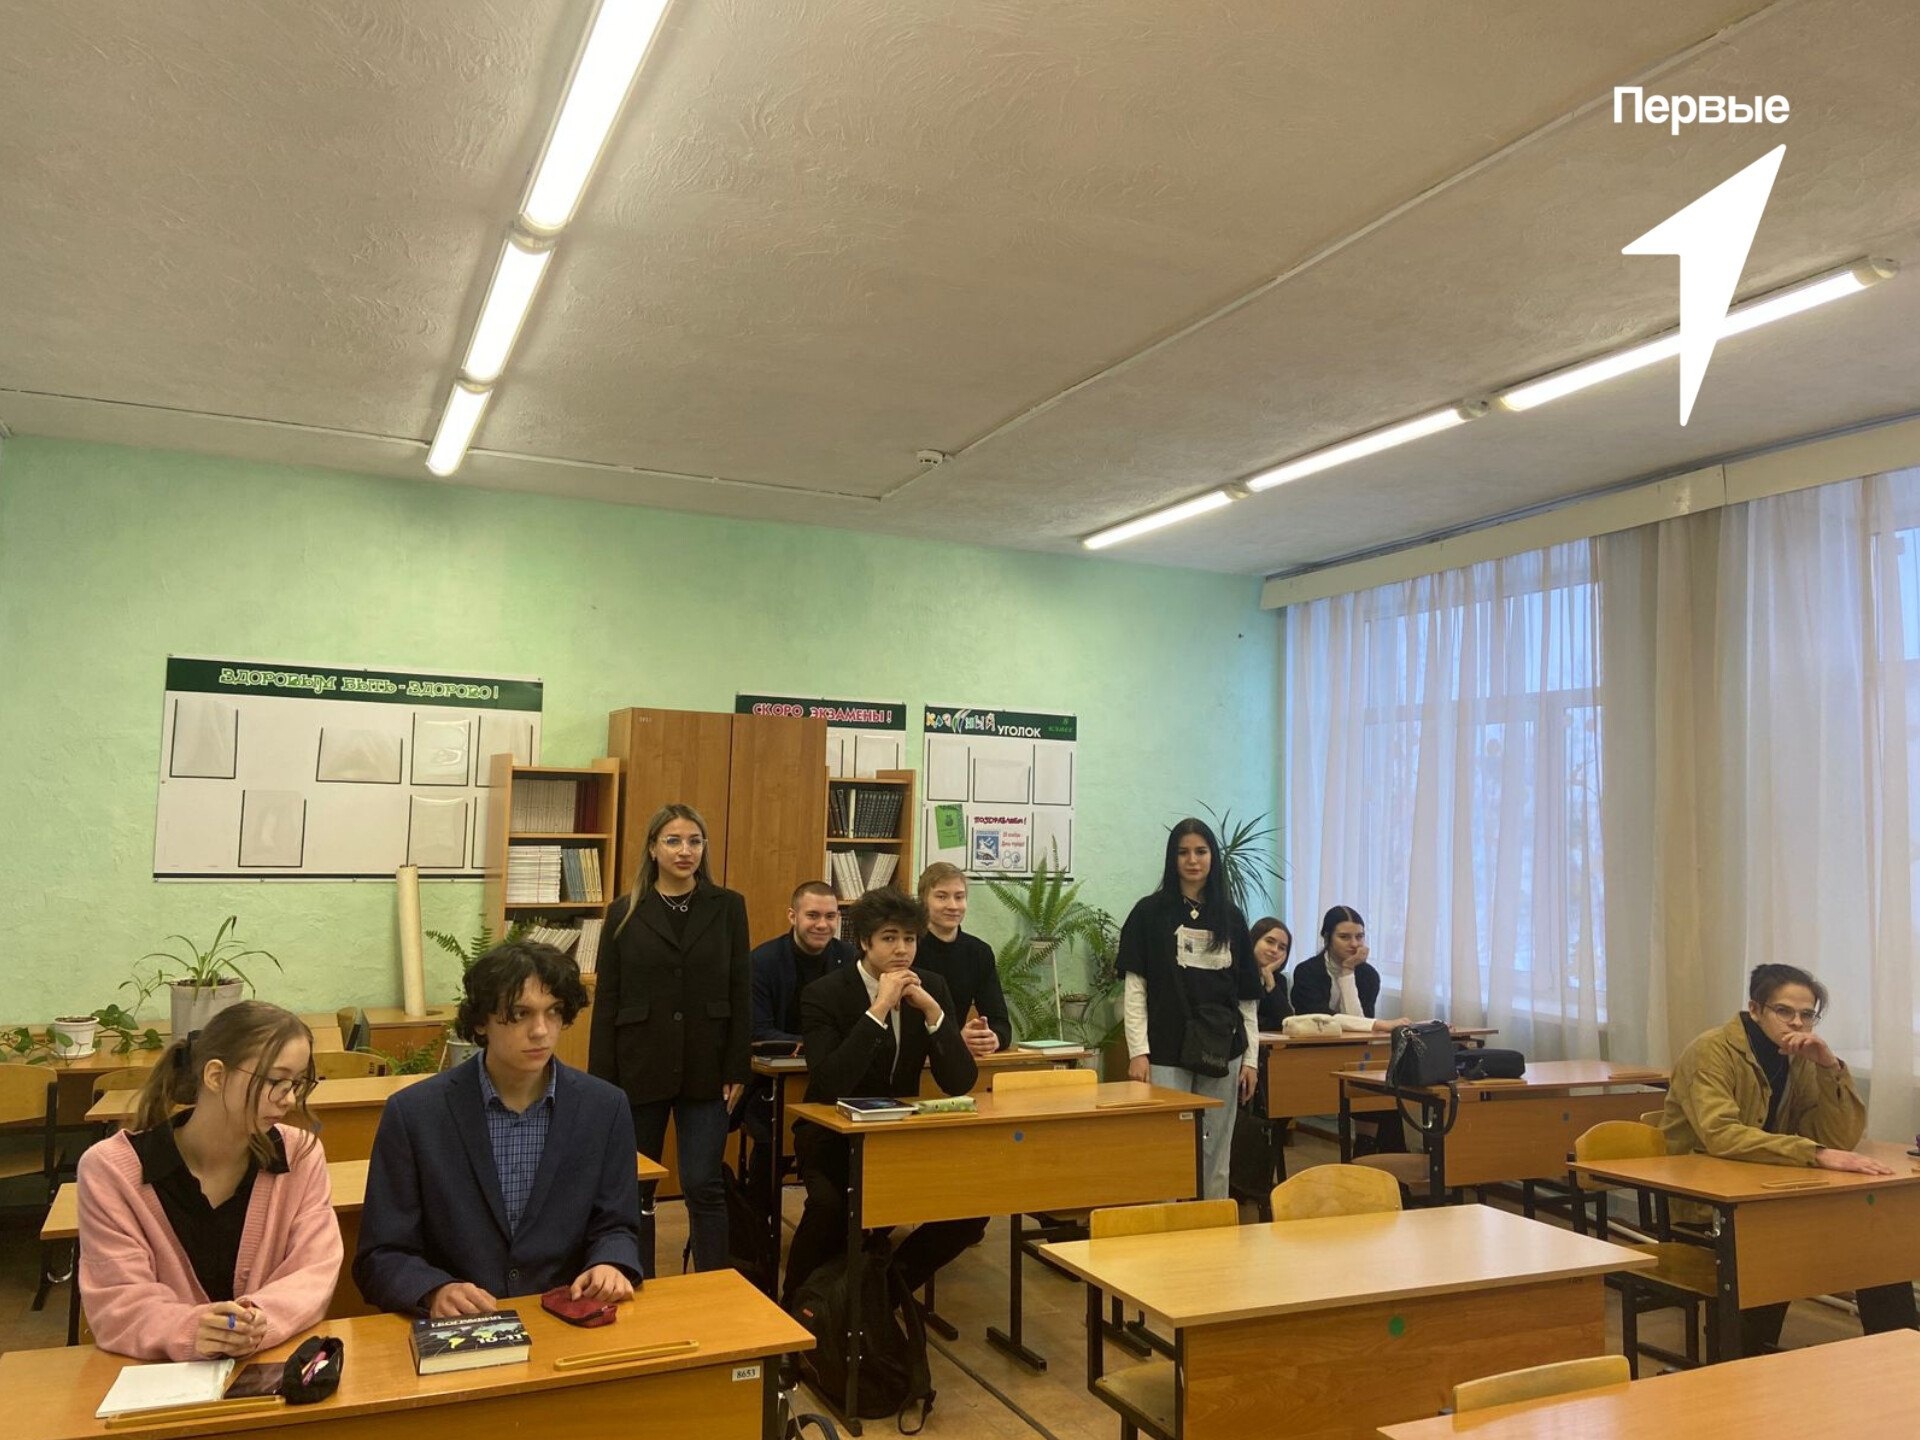 25 января - день российского студенчества. Это еще один прекрасный повод встретиться с выпускниками школы, а если эти выпускники еще и сами были школьными активистами, тогда вдвойне приятней..